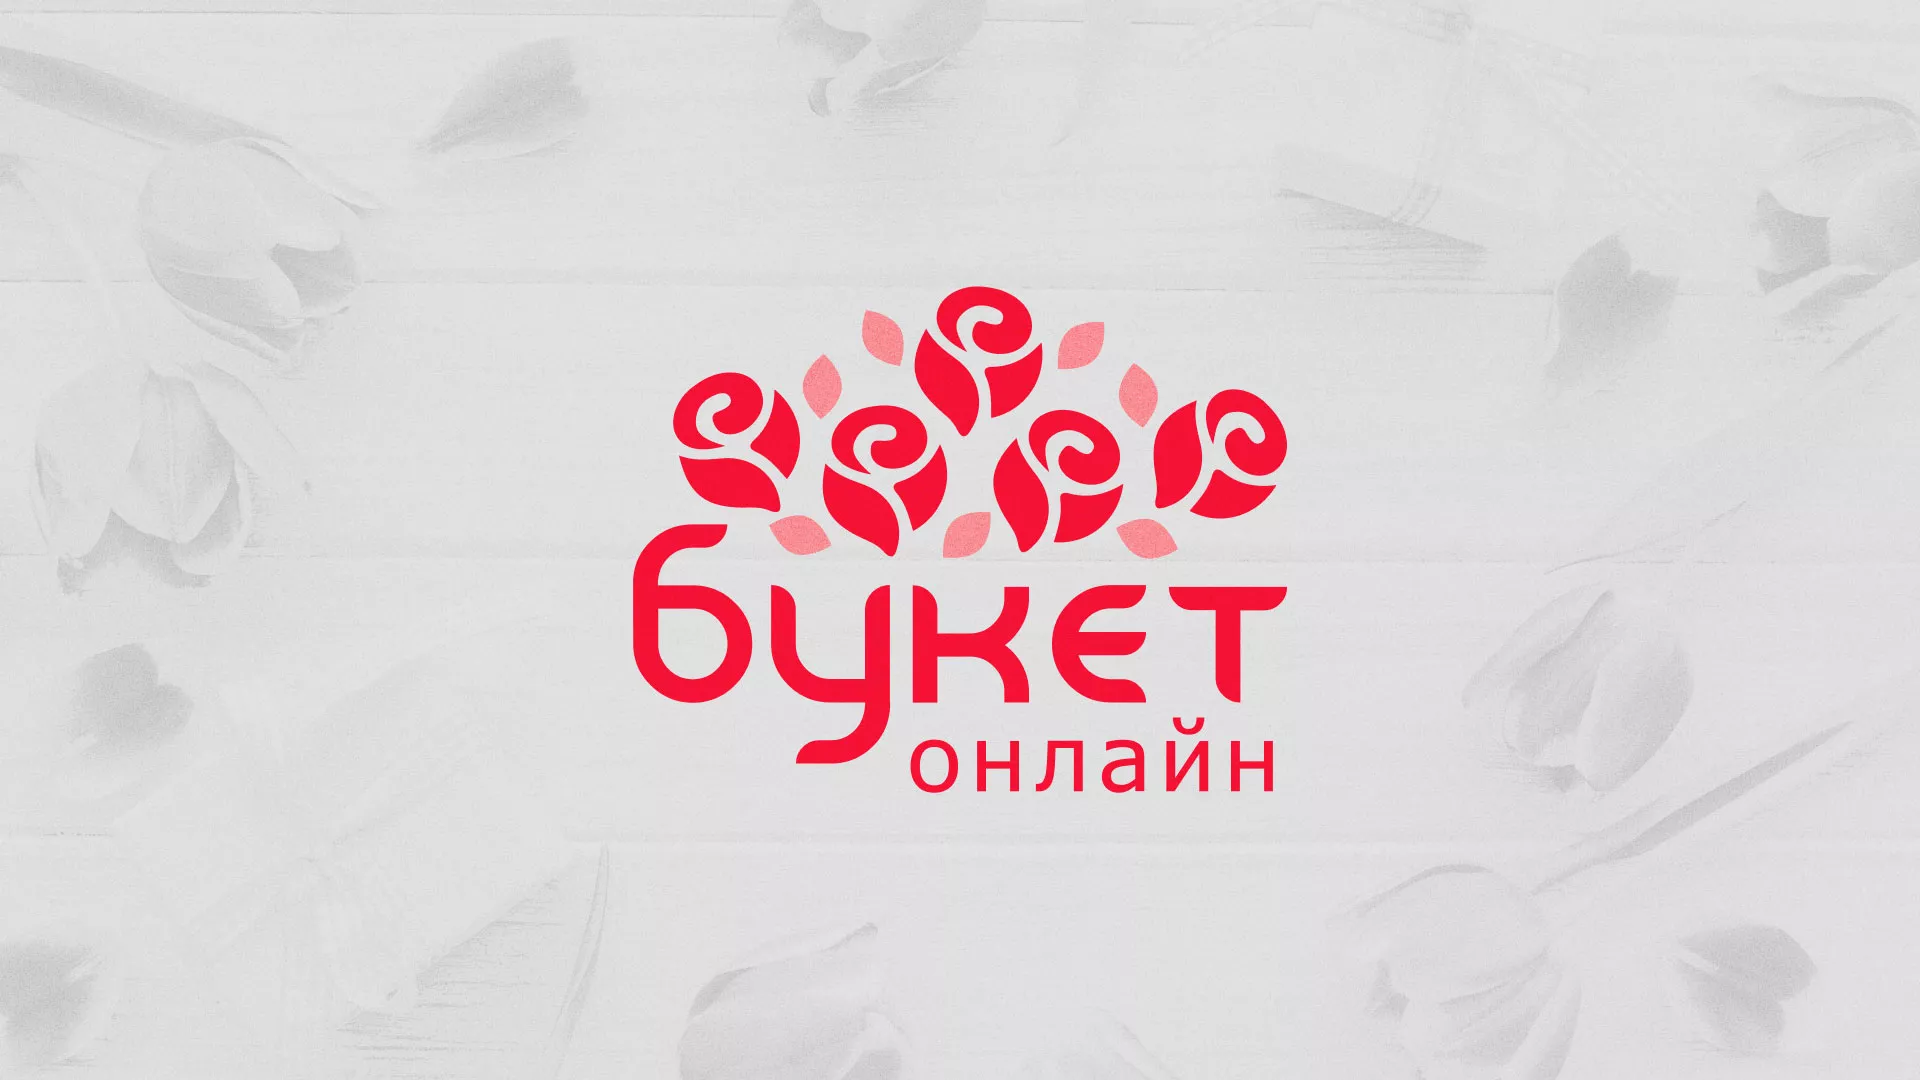 Создание интернет-магазина «Букет-онлайн» по цветам в Сланцах